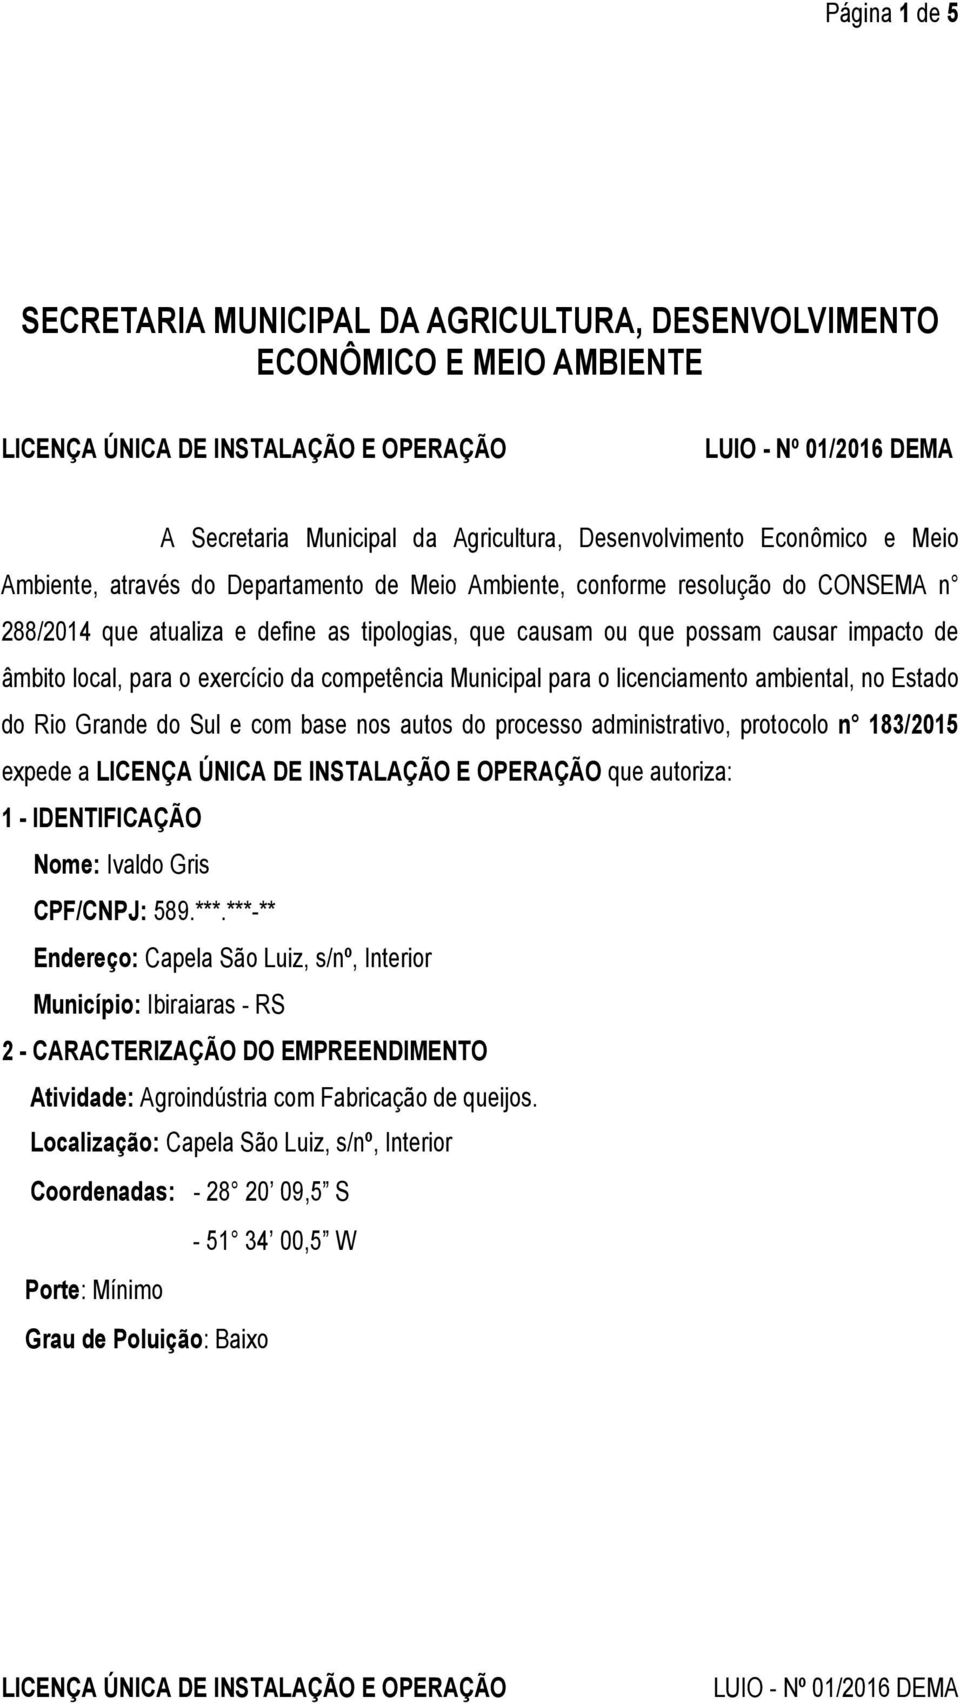 o licenciamento ambiental, no Estado do Rio Grande do Sul e com base nos autos do processo administrativo, protocolo n 183/2015 expede a que autoriza: 1 - IDENTIFICAÇÃO Nome: Ivaldo Gris CPF/CNPJ: